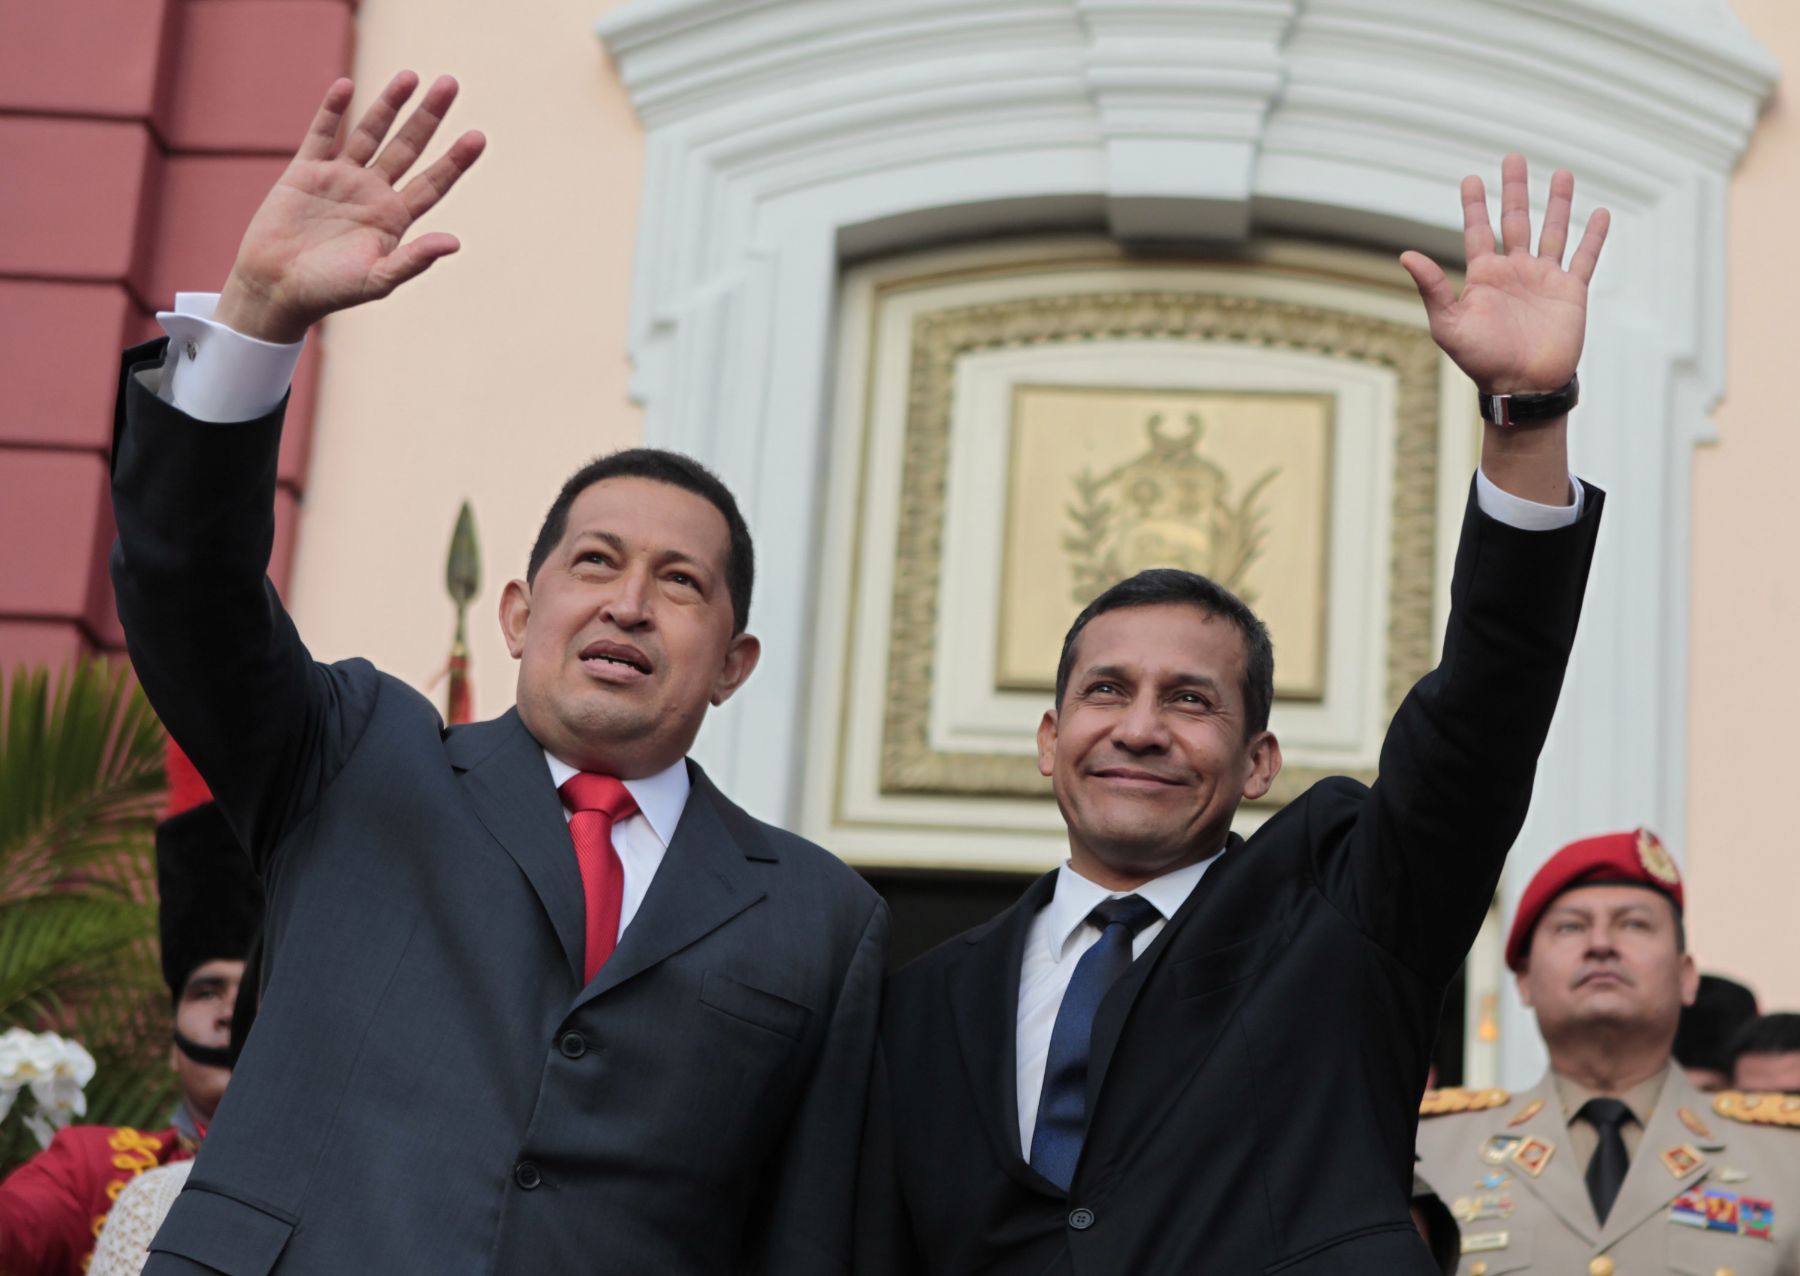 Presidente Ollanta Humala felicita a Hugo Chávez por triunfo electoral en Venezuela | Noticias | Agencia Peruana de Noticias Andina